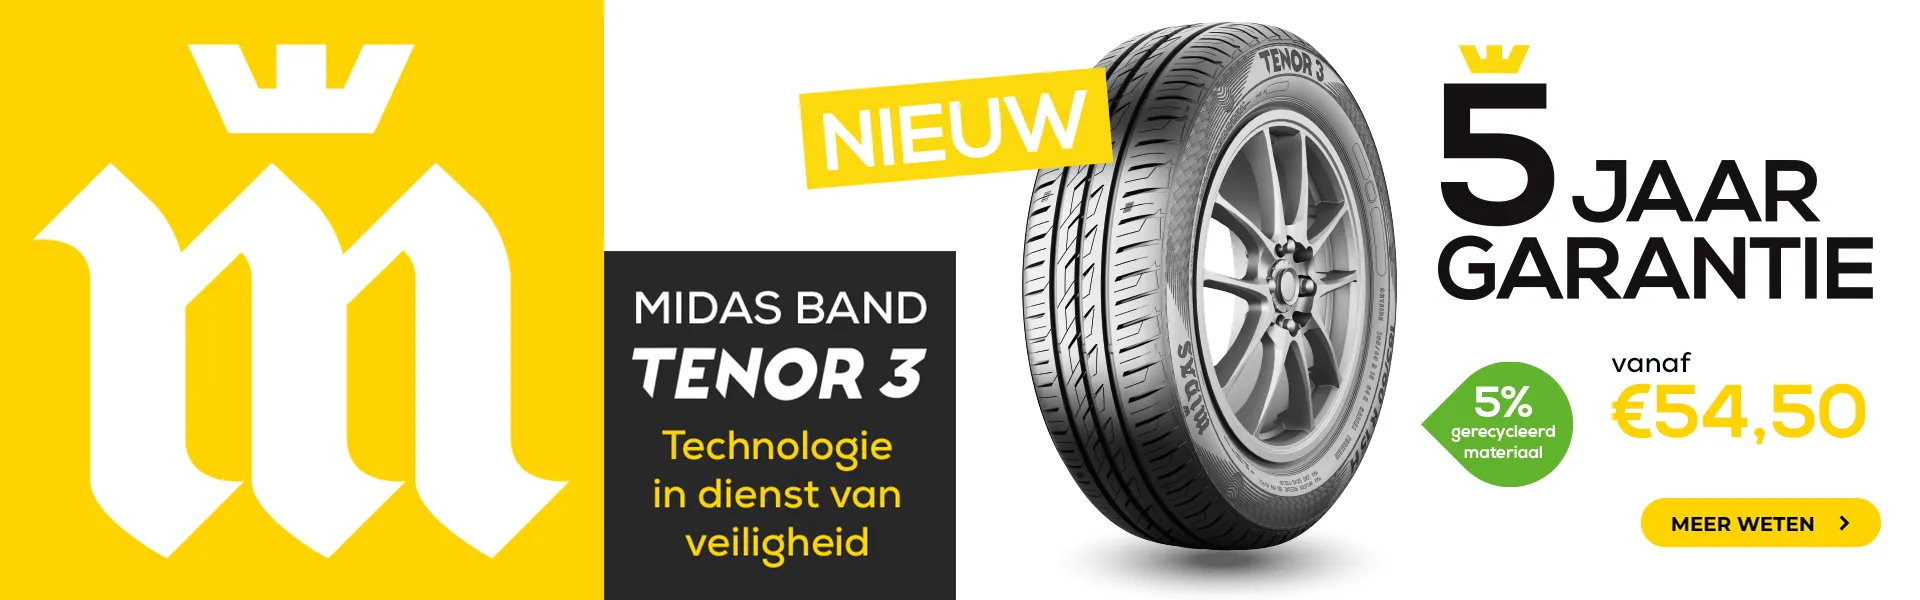 op1-22-tenor3-banner-homepage-desktop-nl-54